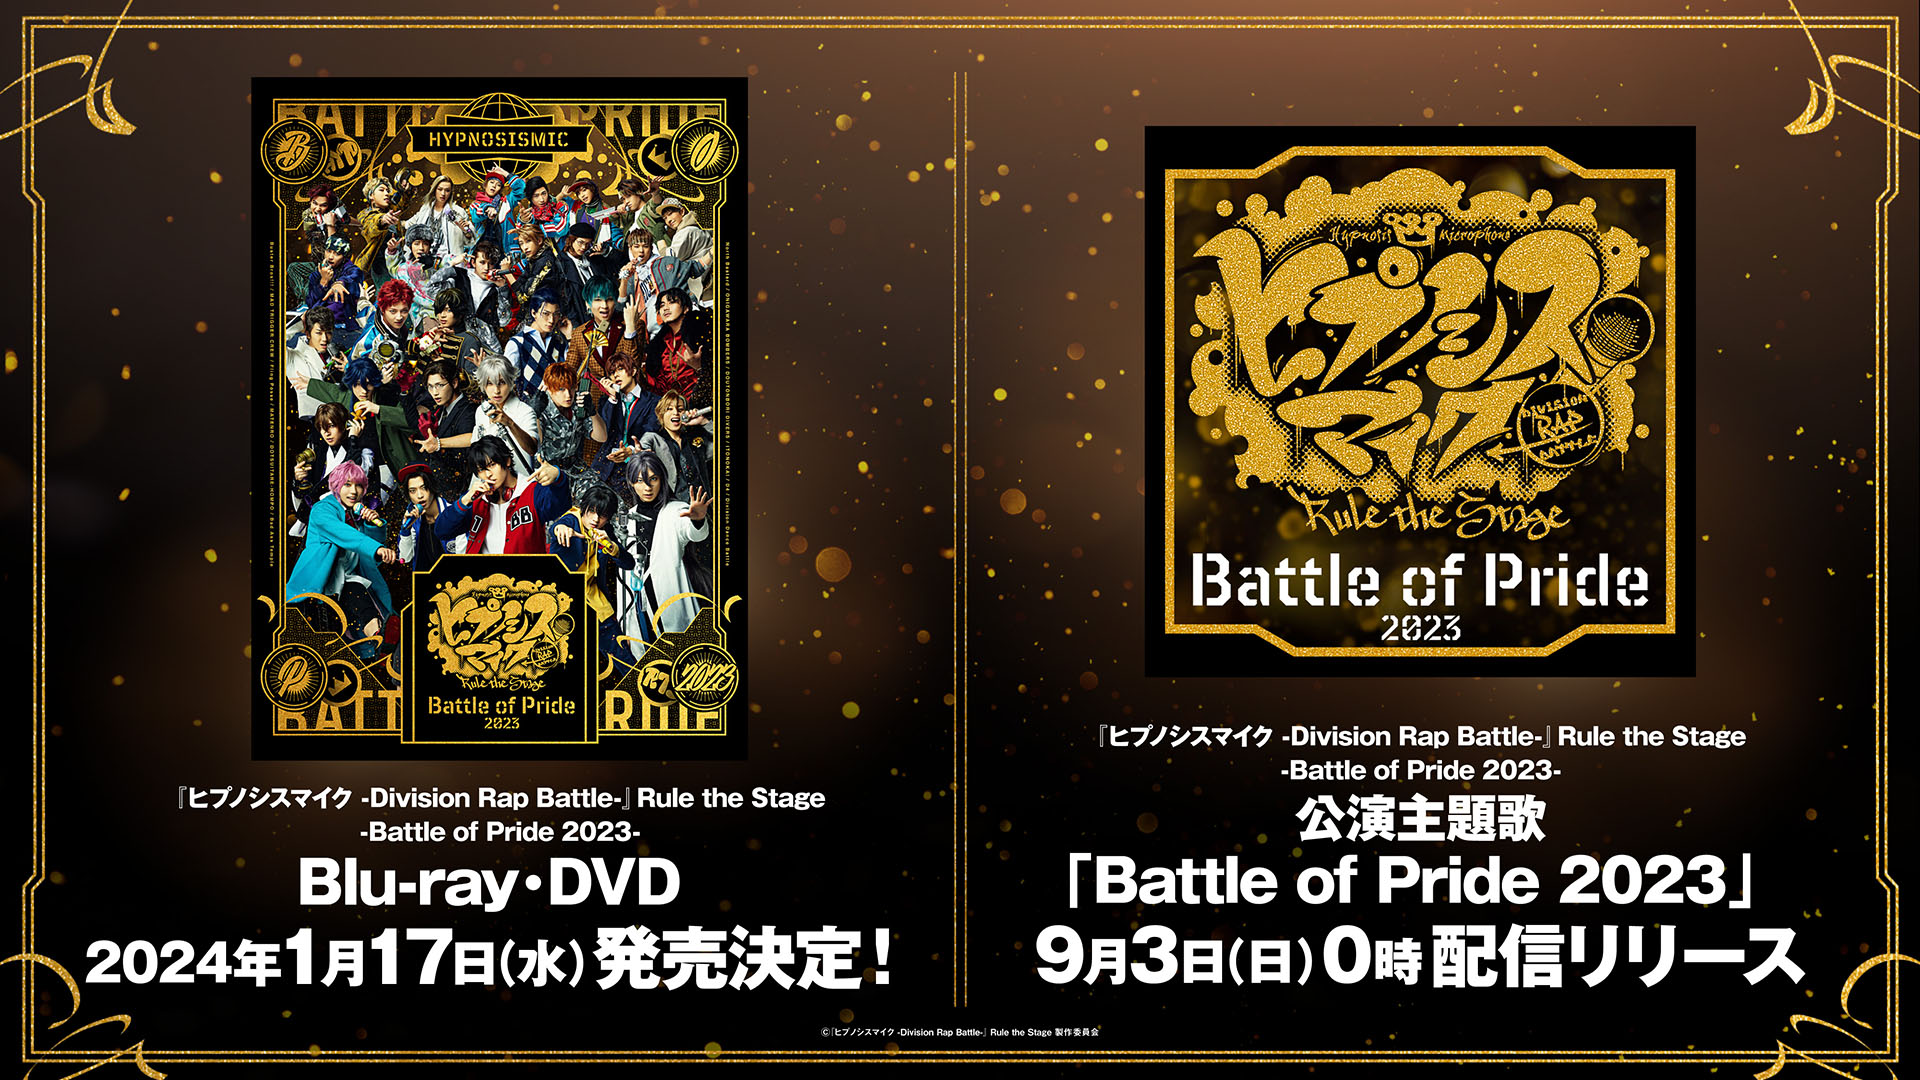 舞台ヒプマイ -Battle of Pride 2023- Blu-ray&DVD化、公演主題歌配信